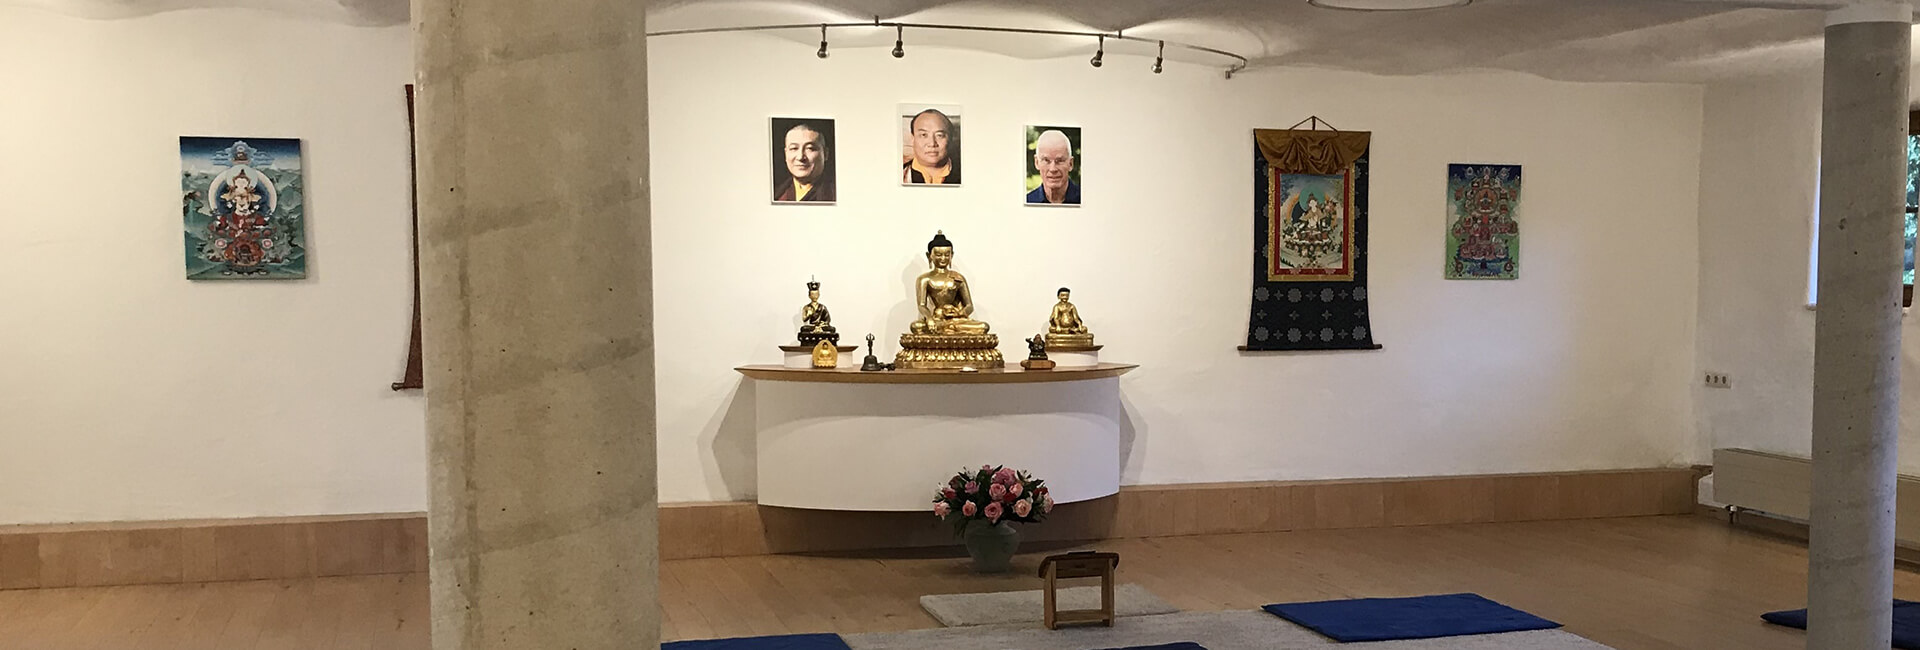 Buddhistisches Zentrum Ravensburg - Stiftungszentrum der BSDD